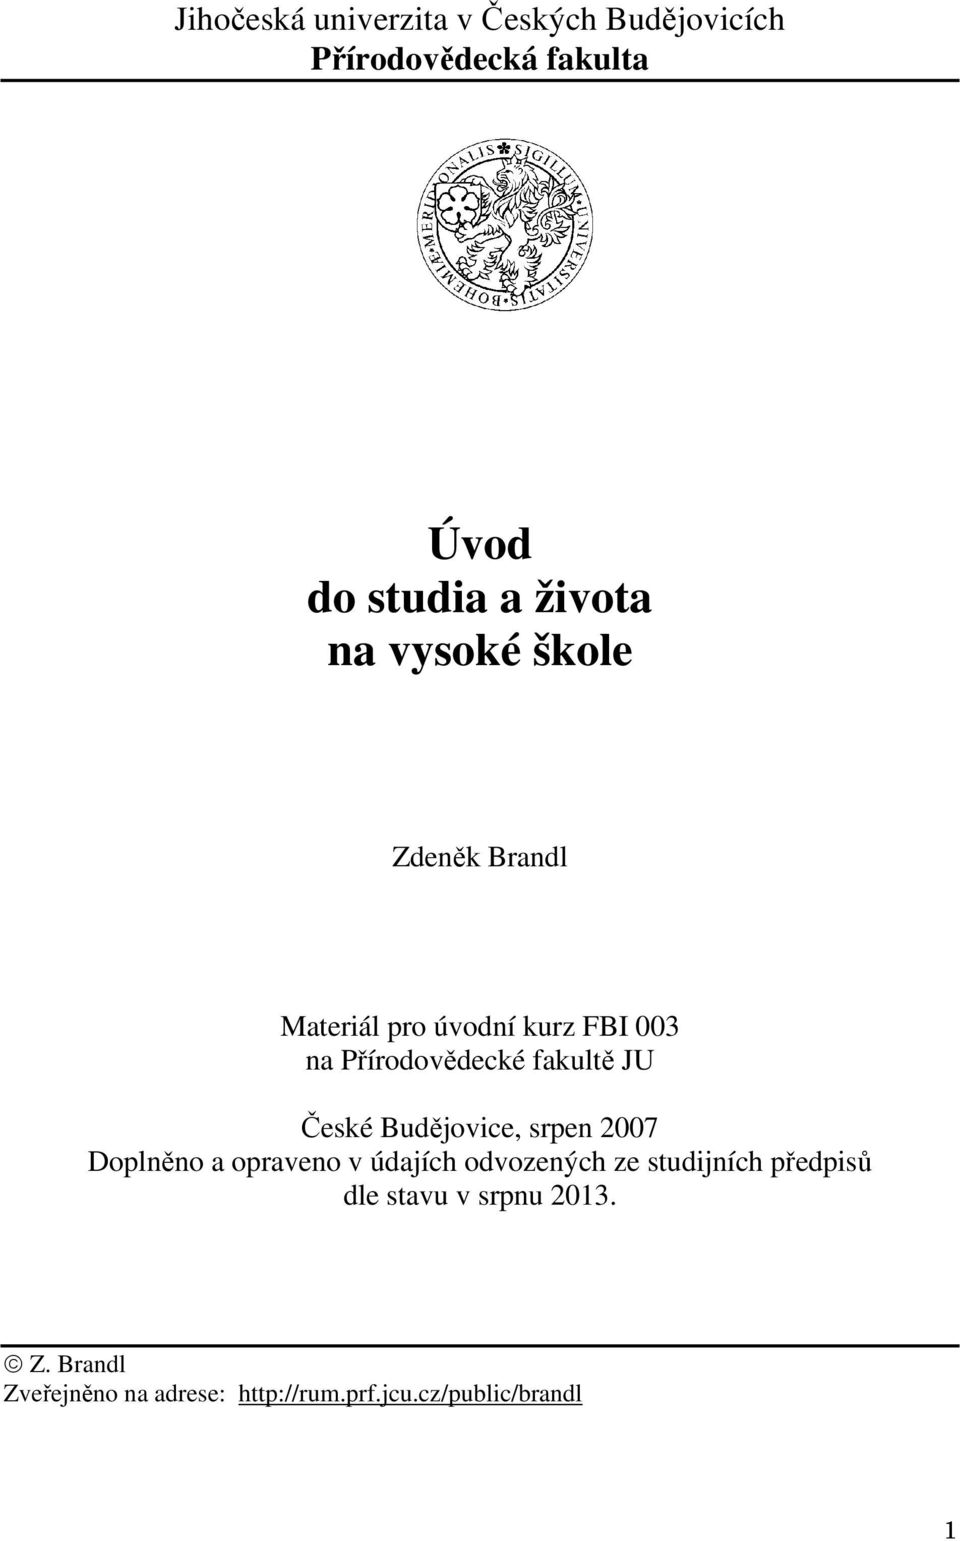 České Budějovice, srpen 2007 Doplněno a opraveno v údajích odvozených ze studijních předpisů